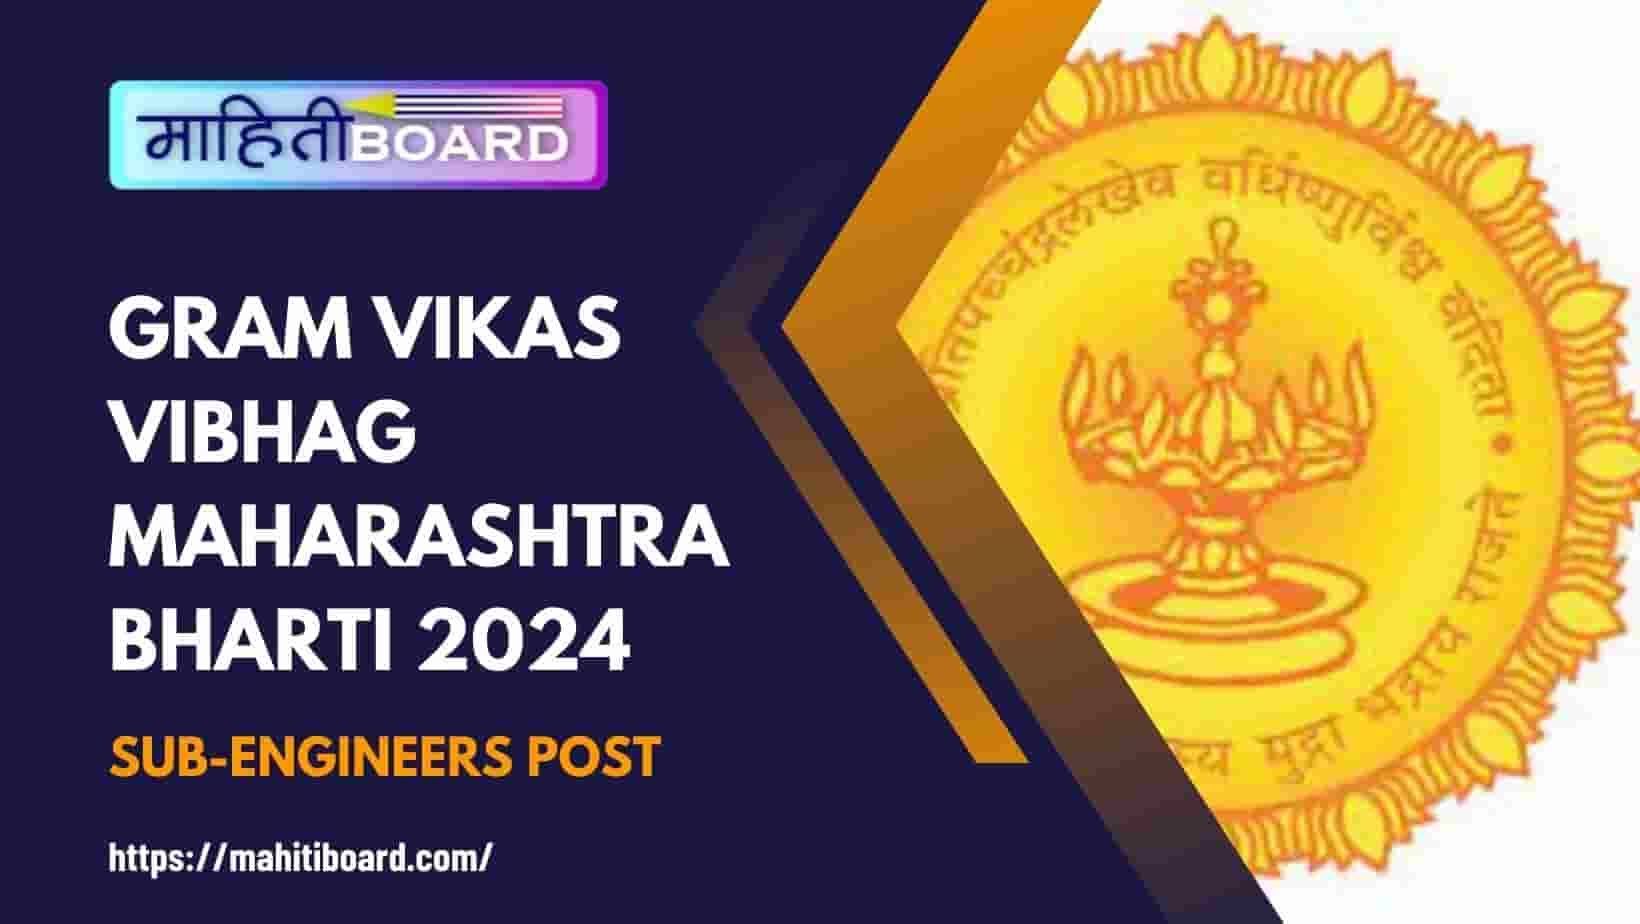 Gram Vikas Vibhag Maharashtra Bharti 2024